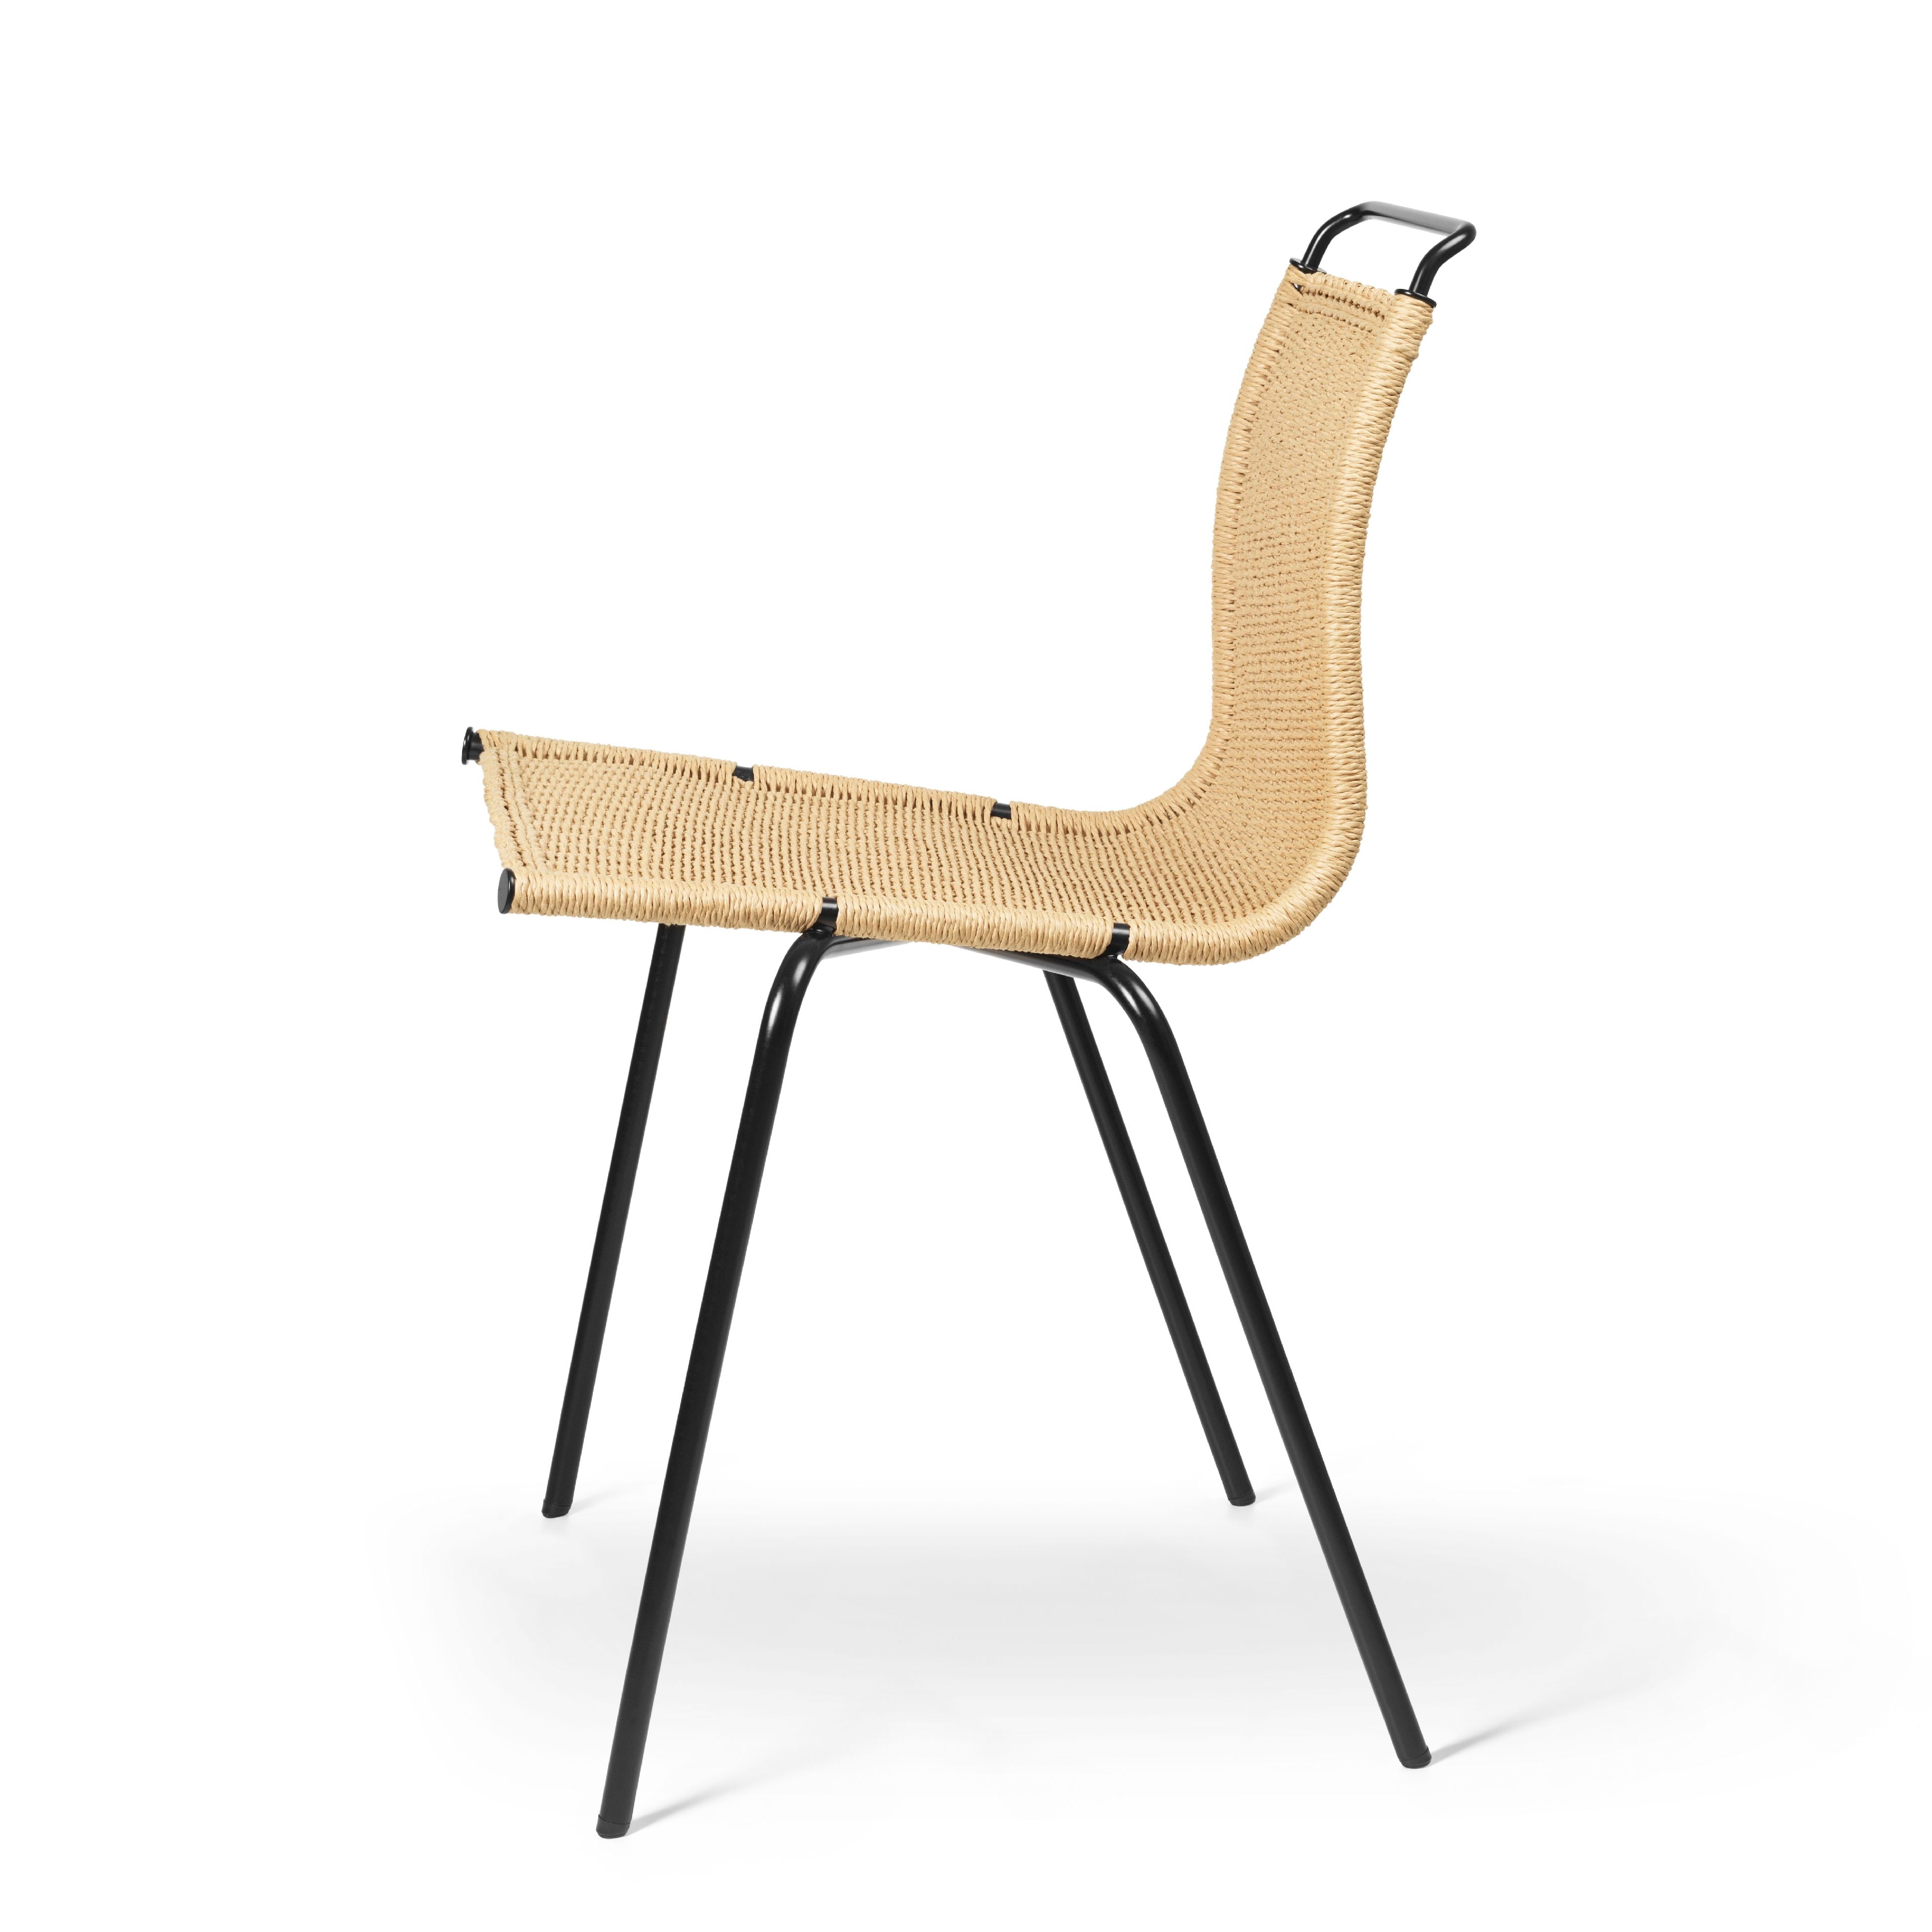 Carl Hansen PK1 stol, sort pulver coated stål/naturlig papirledning